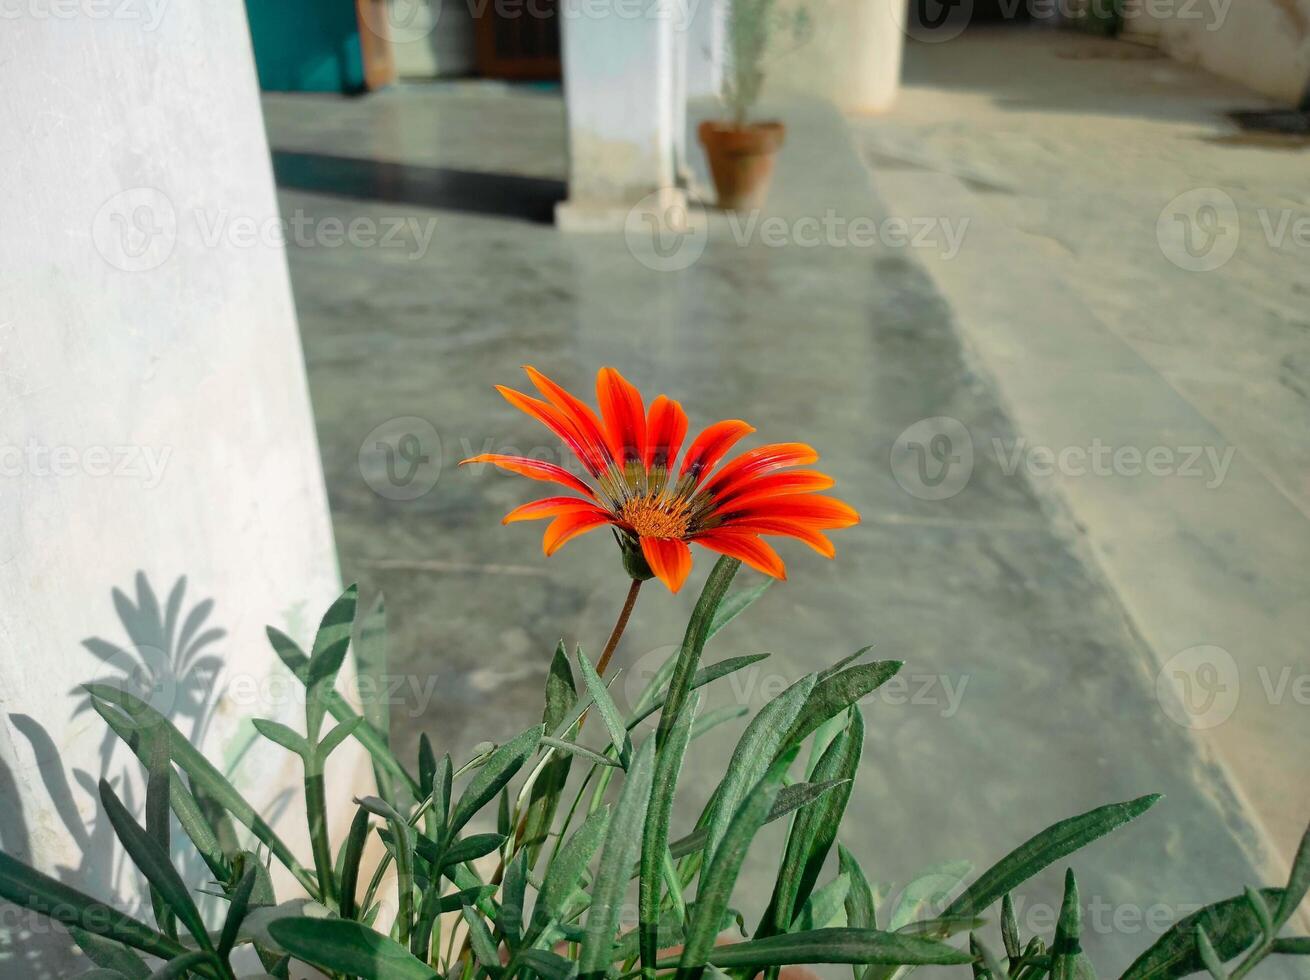 Orange Gazania Blume Gartenarbeit foto